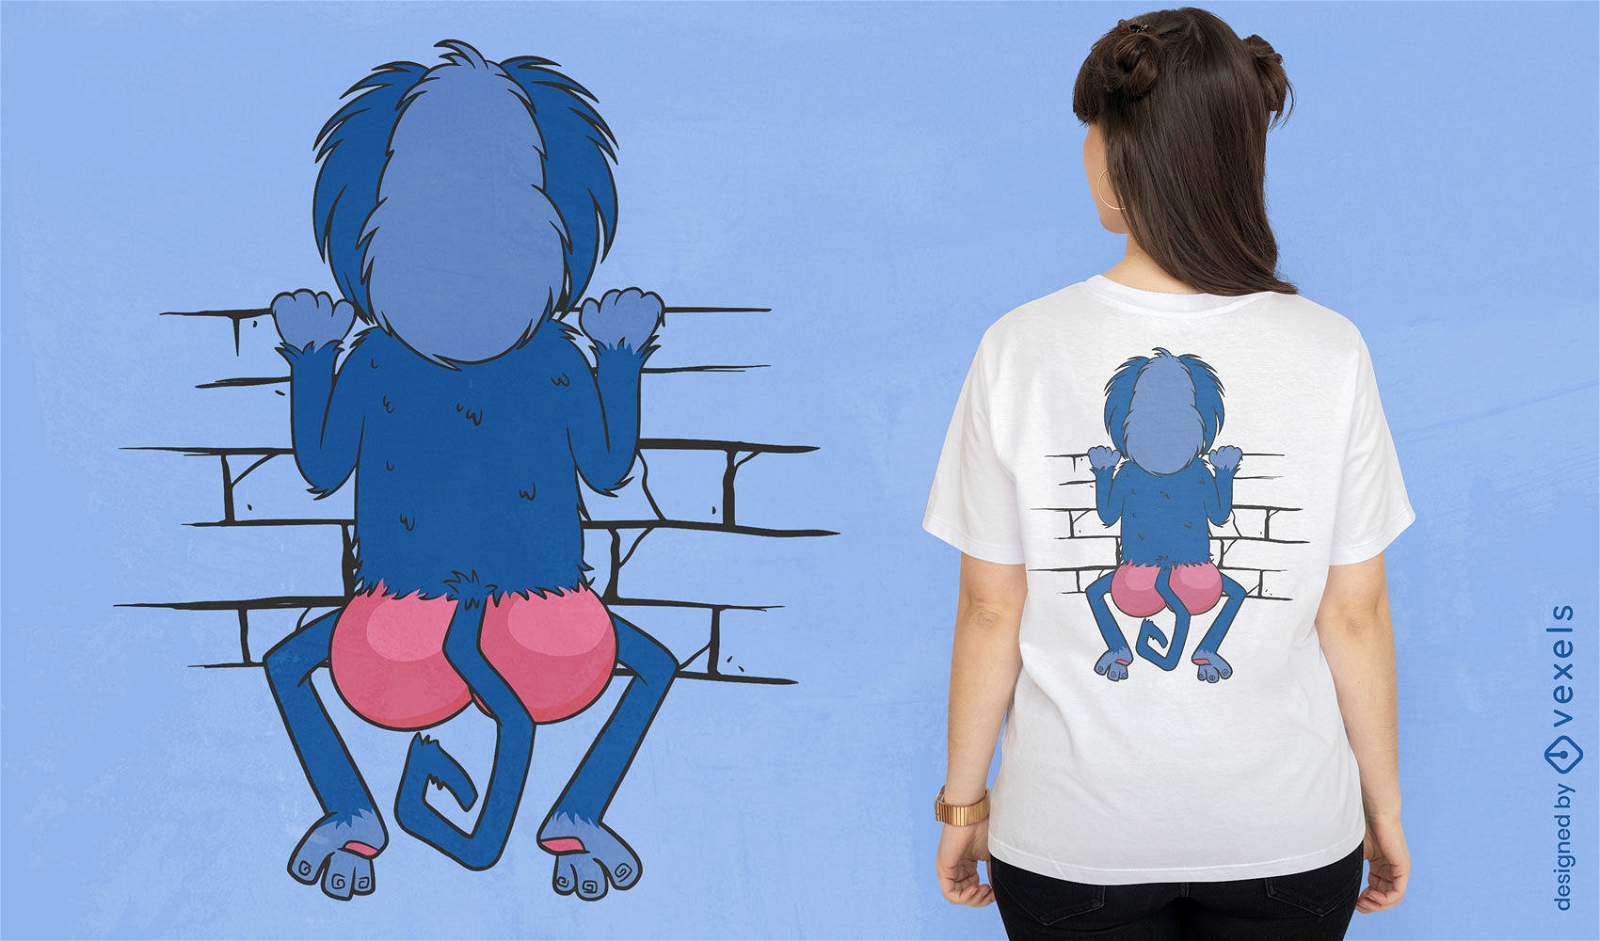 Animal macaco olhando por cima do design de camiseta de parede